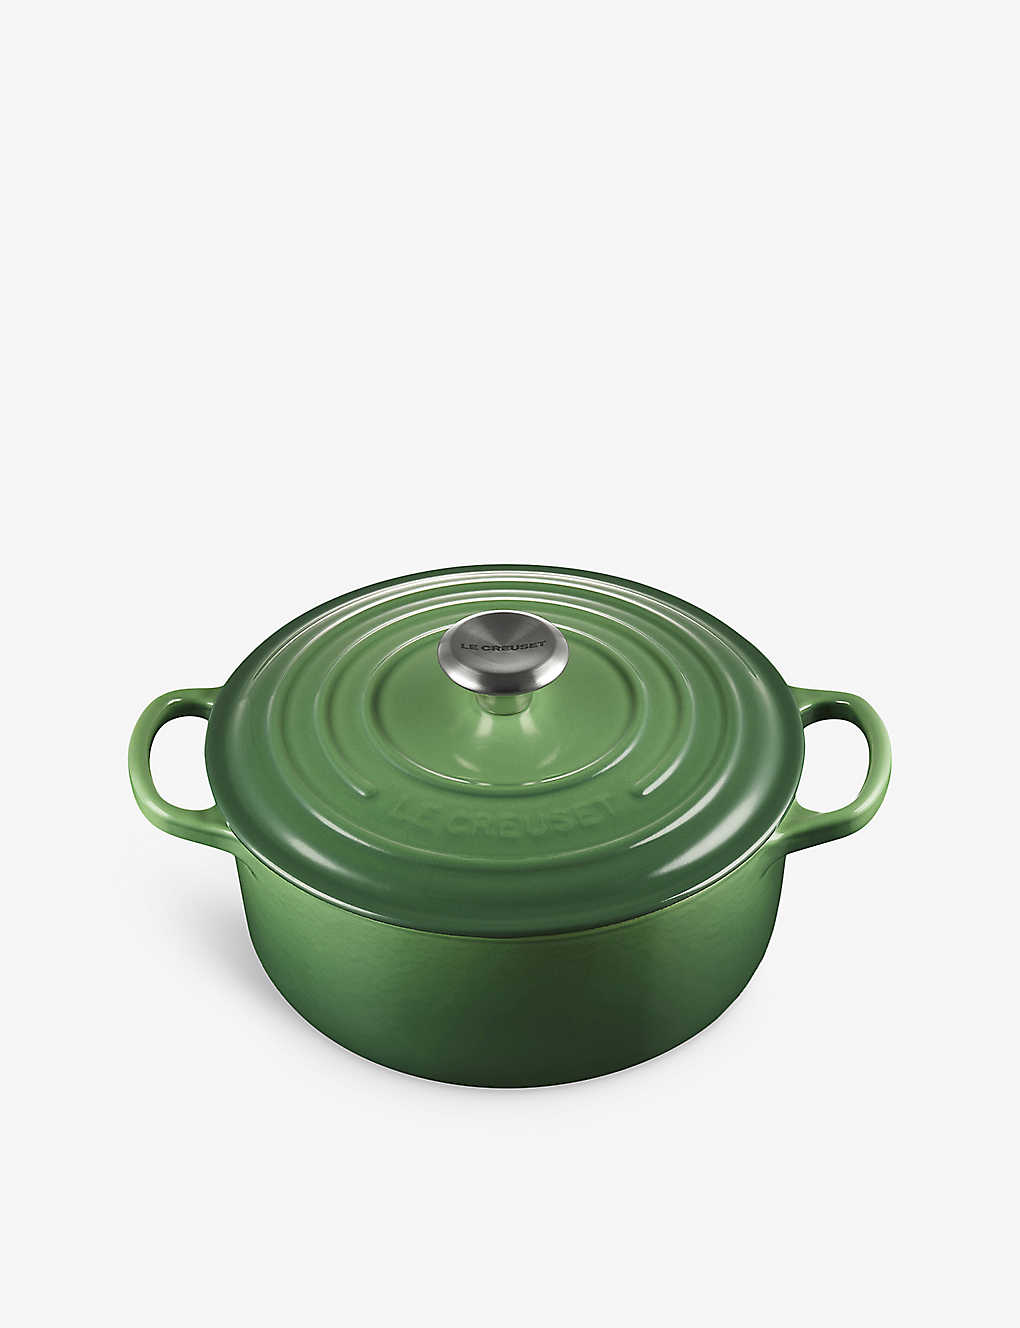 楽天Global HomesLE CREUSET シグネチャー キャストアイアン キャセロールディッシュ 20cm Signature cast-iron casserole dish 20cm BAMBOO GREEN